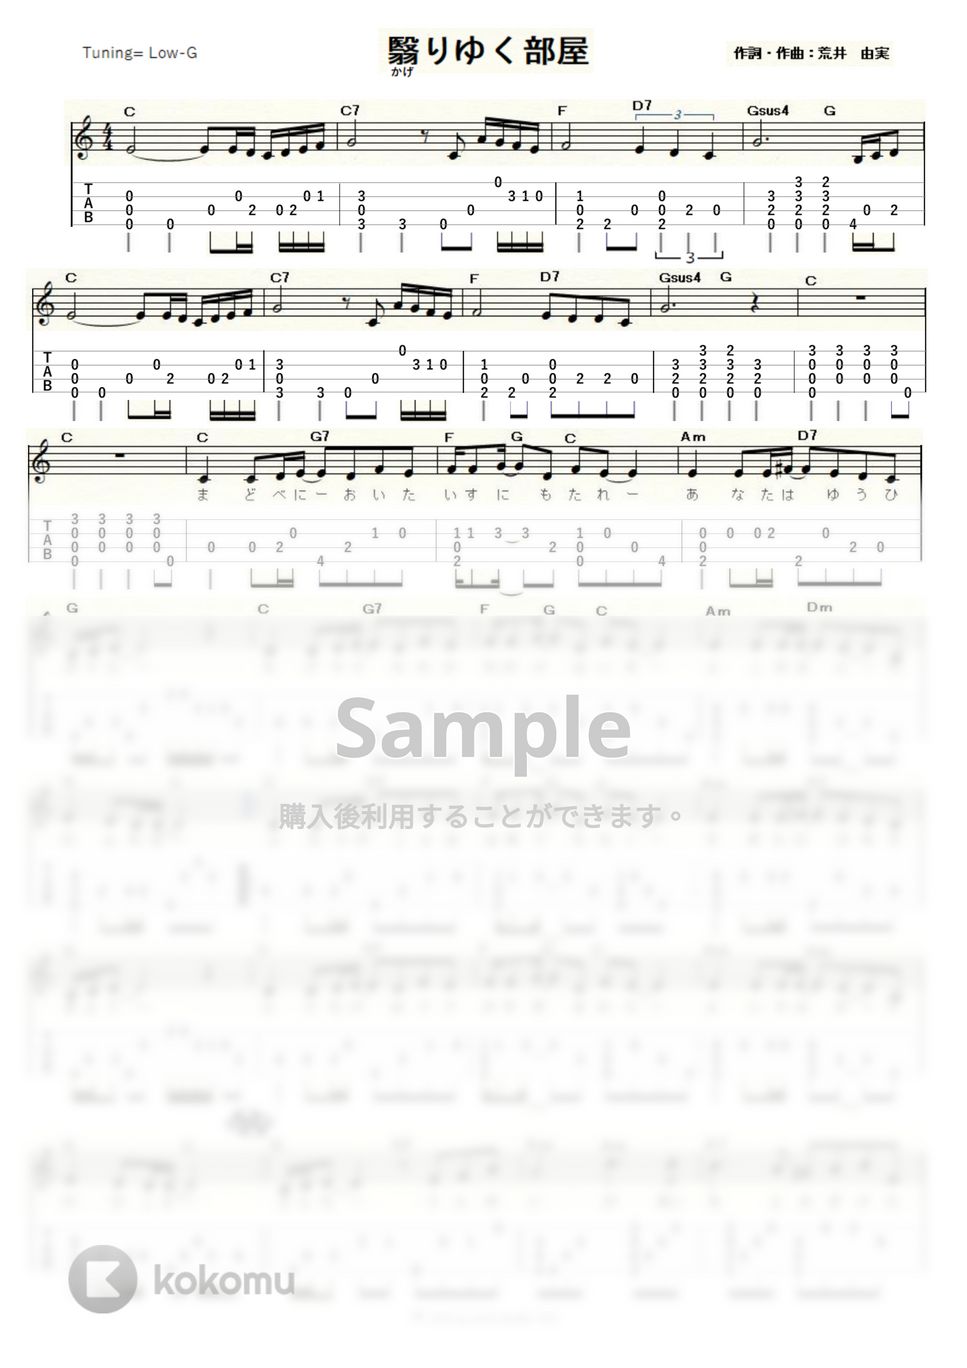 荒井由実 - 翳りゆく部屋 (ｳｸﾚﾚｿﾛ / Low-G / 中級) by ukulelepapa